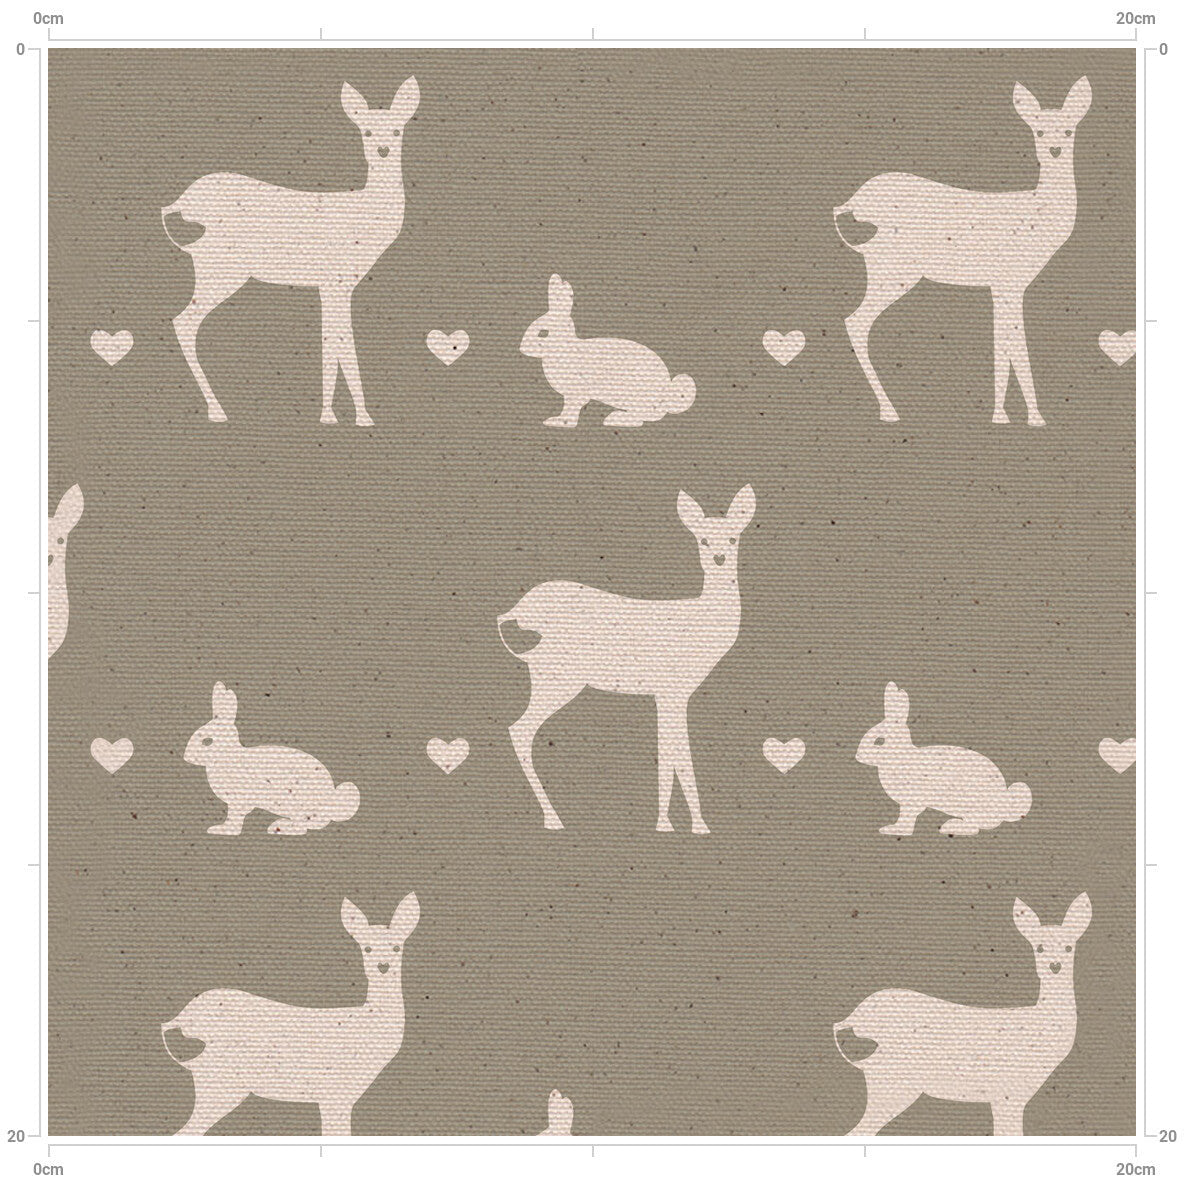 Deer & Rabbit Solid Background